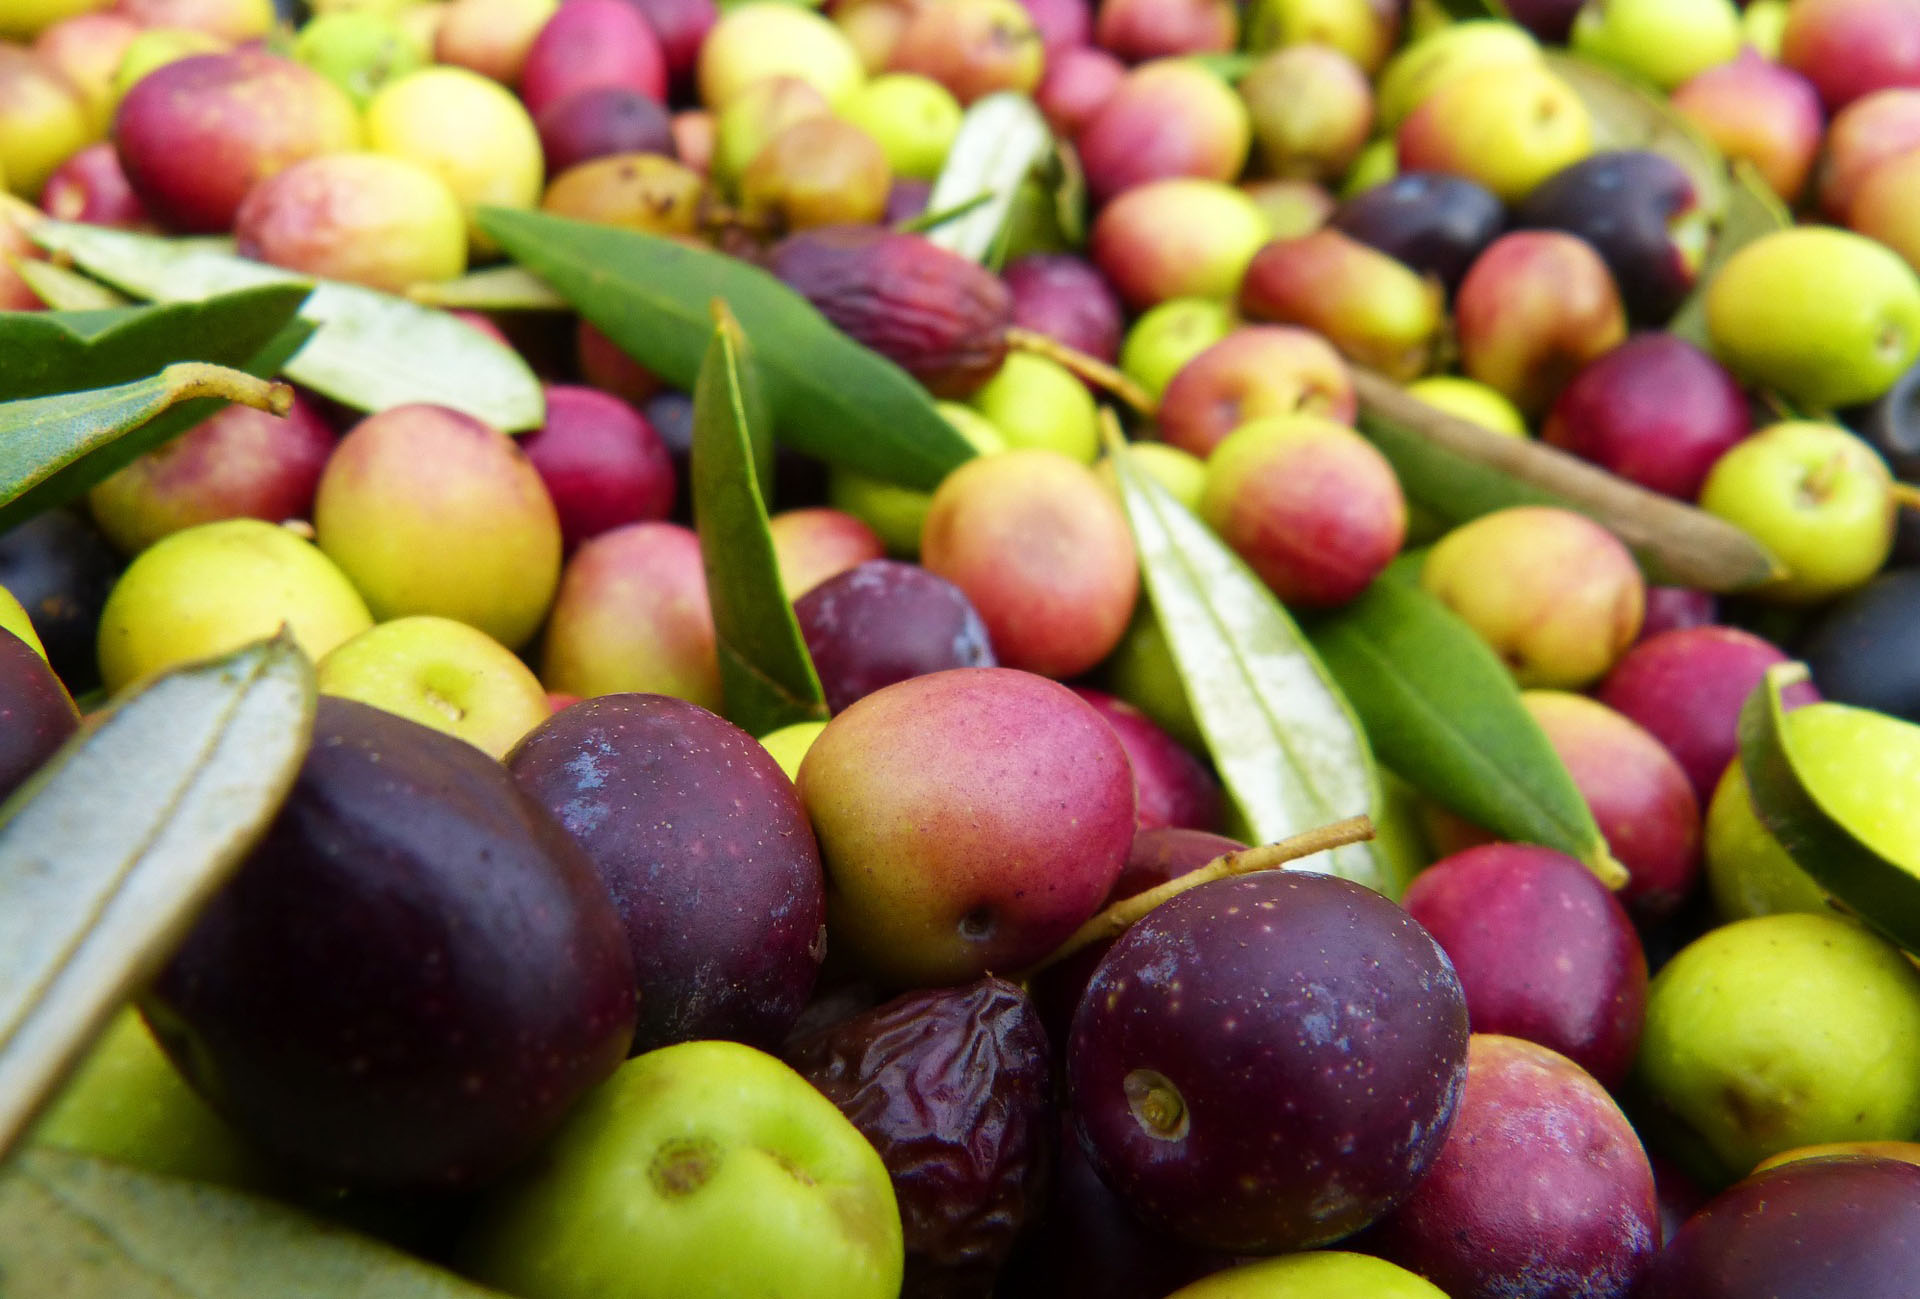 Mange oliven i sorten arbequina samlet i mange farver. Casa Jada